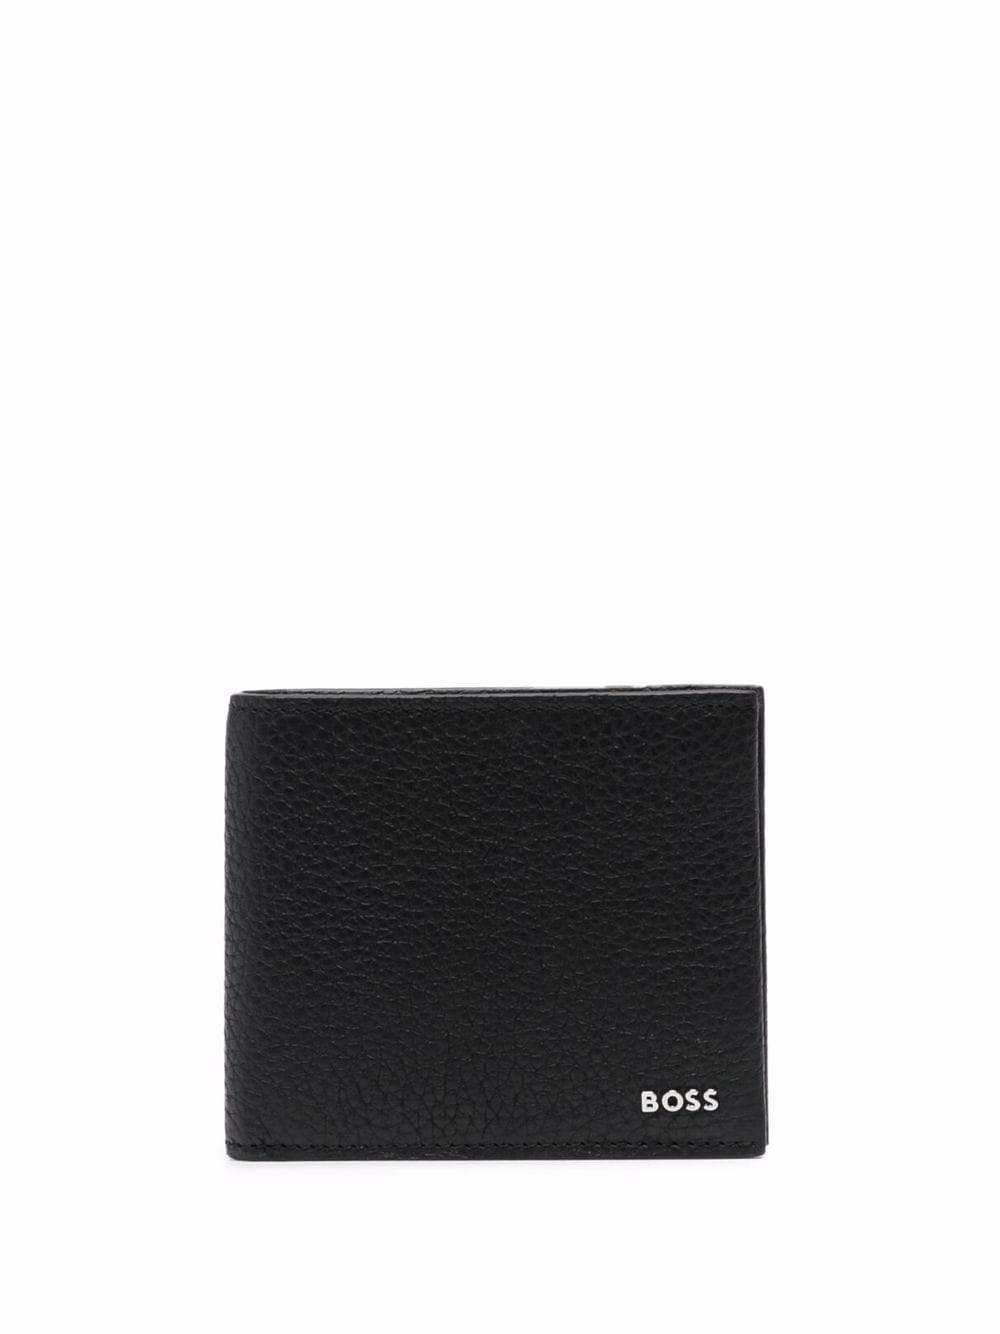 BOSS bi-fold pebble wallet - Black von BOSS